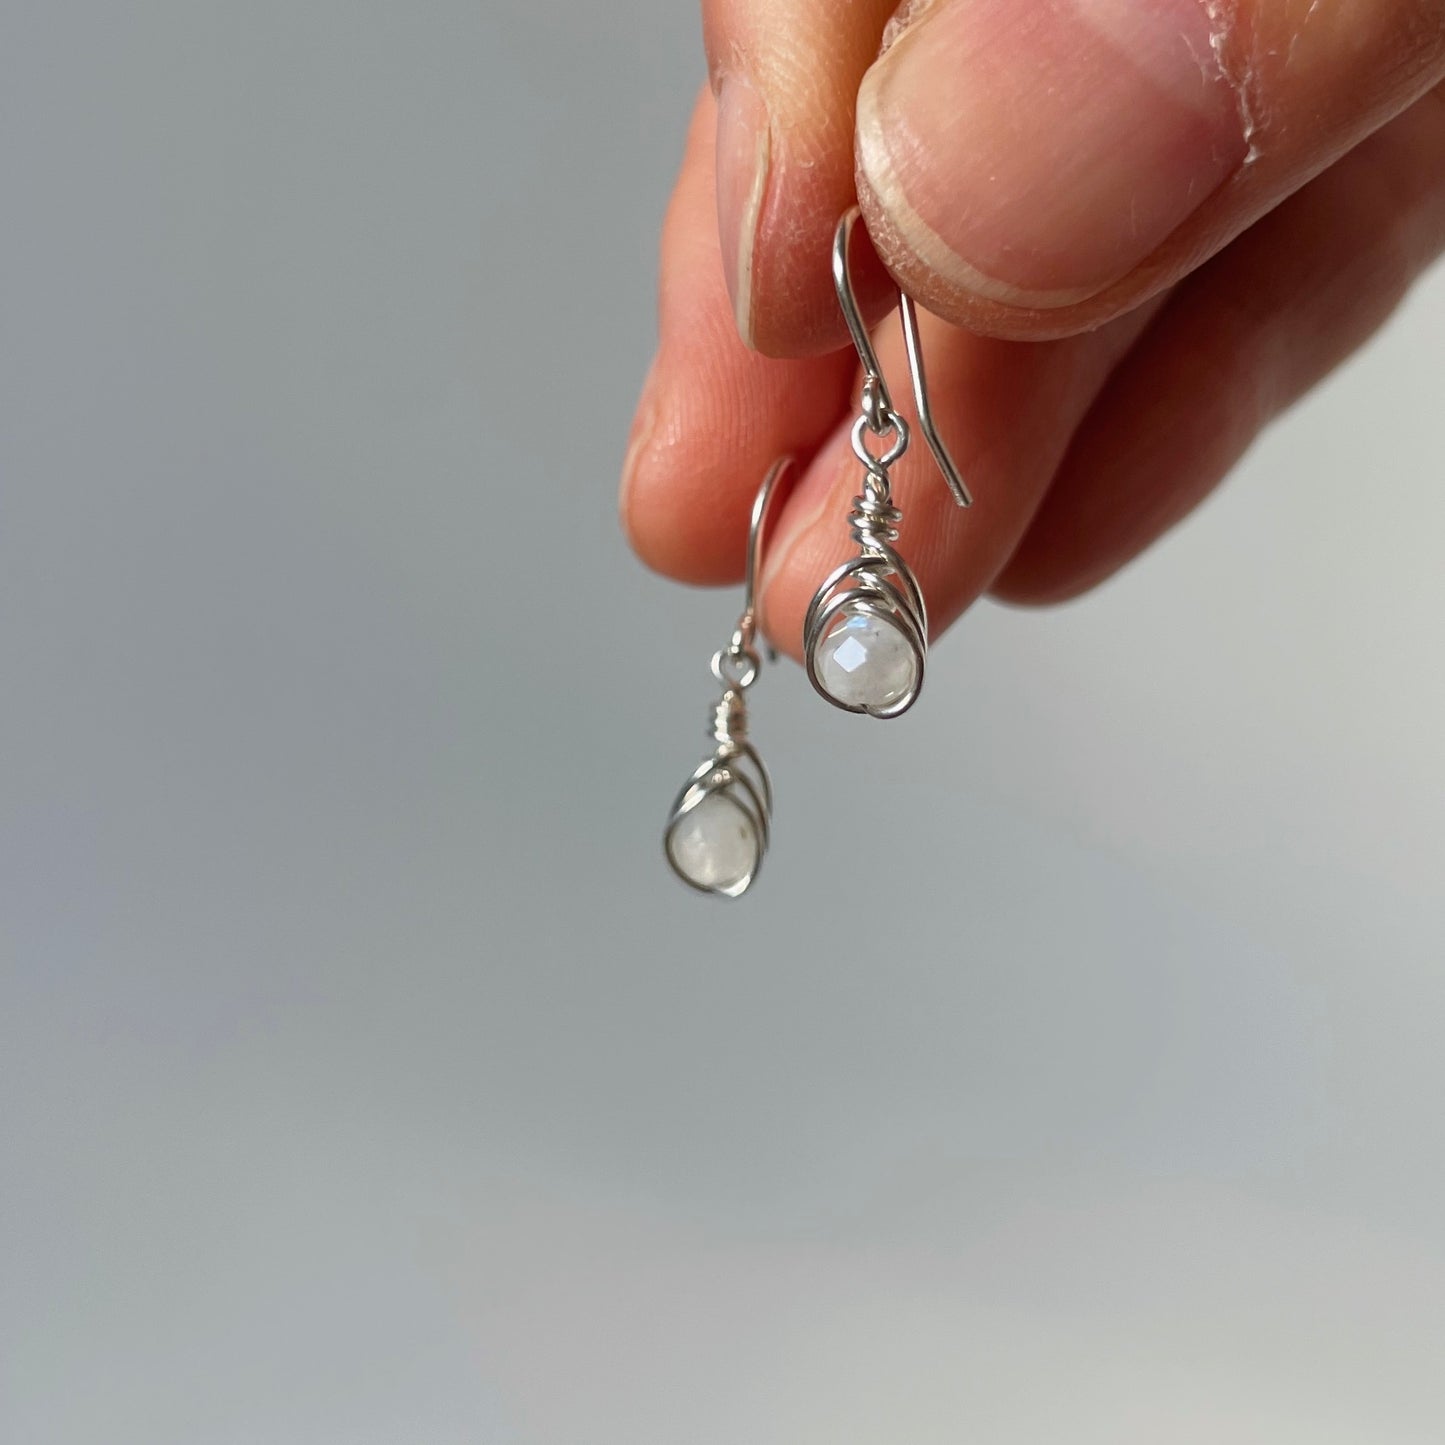 Birthstone Minimal Earrings - Sterling Silver